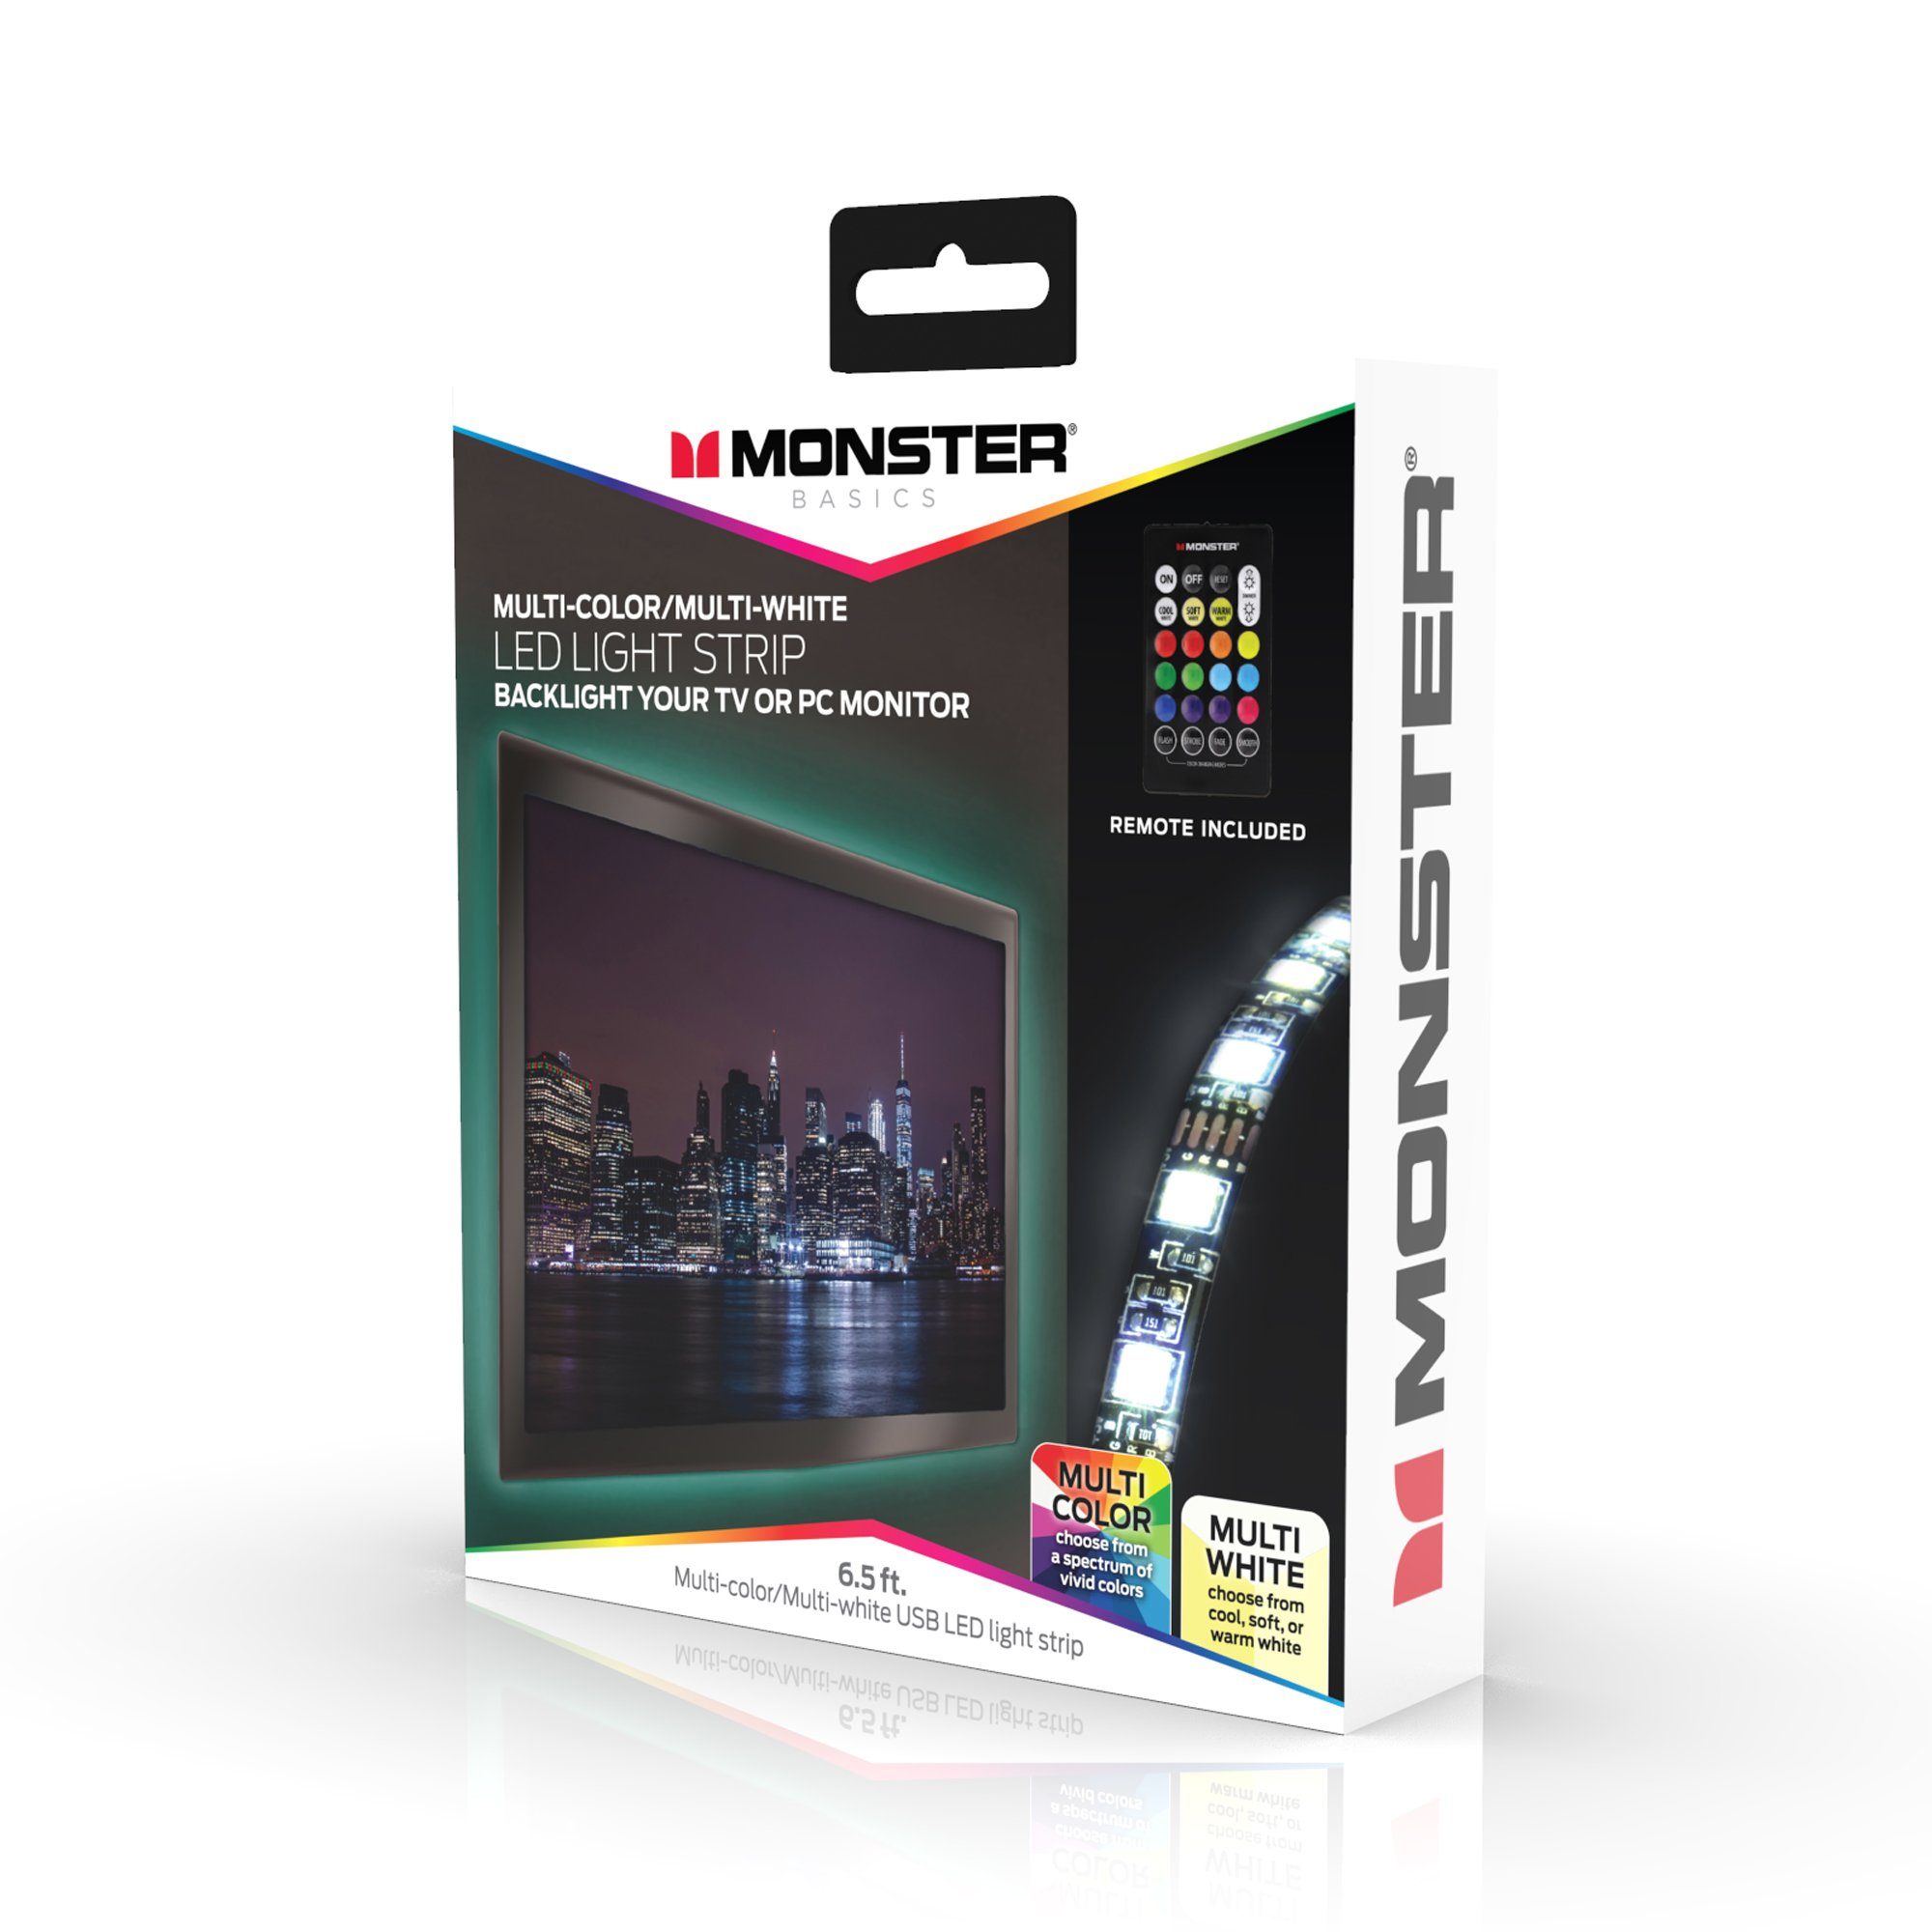 Monster MONSTER ILLUMINESSENCE SMART LIGHTSTRIP andwendbar Smartphone-App, Vielseitige über Smarter LED-Lichtstreifen, Sprachsteuerung, Steuerbar